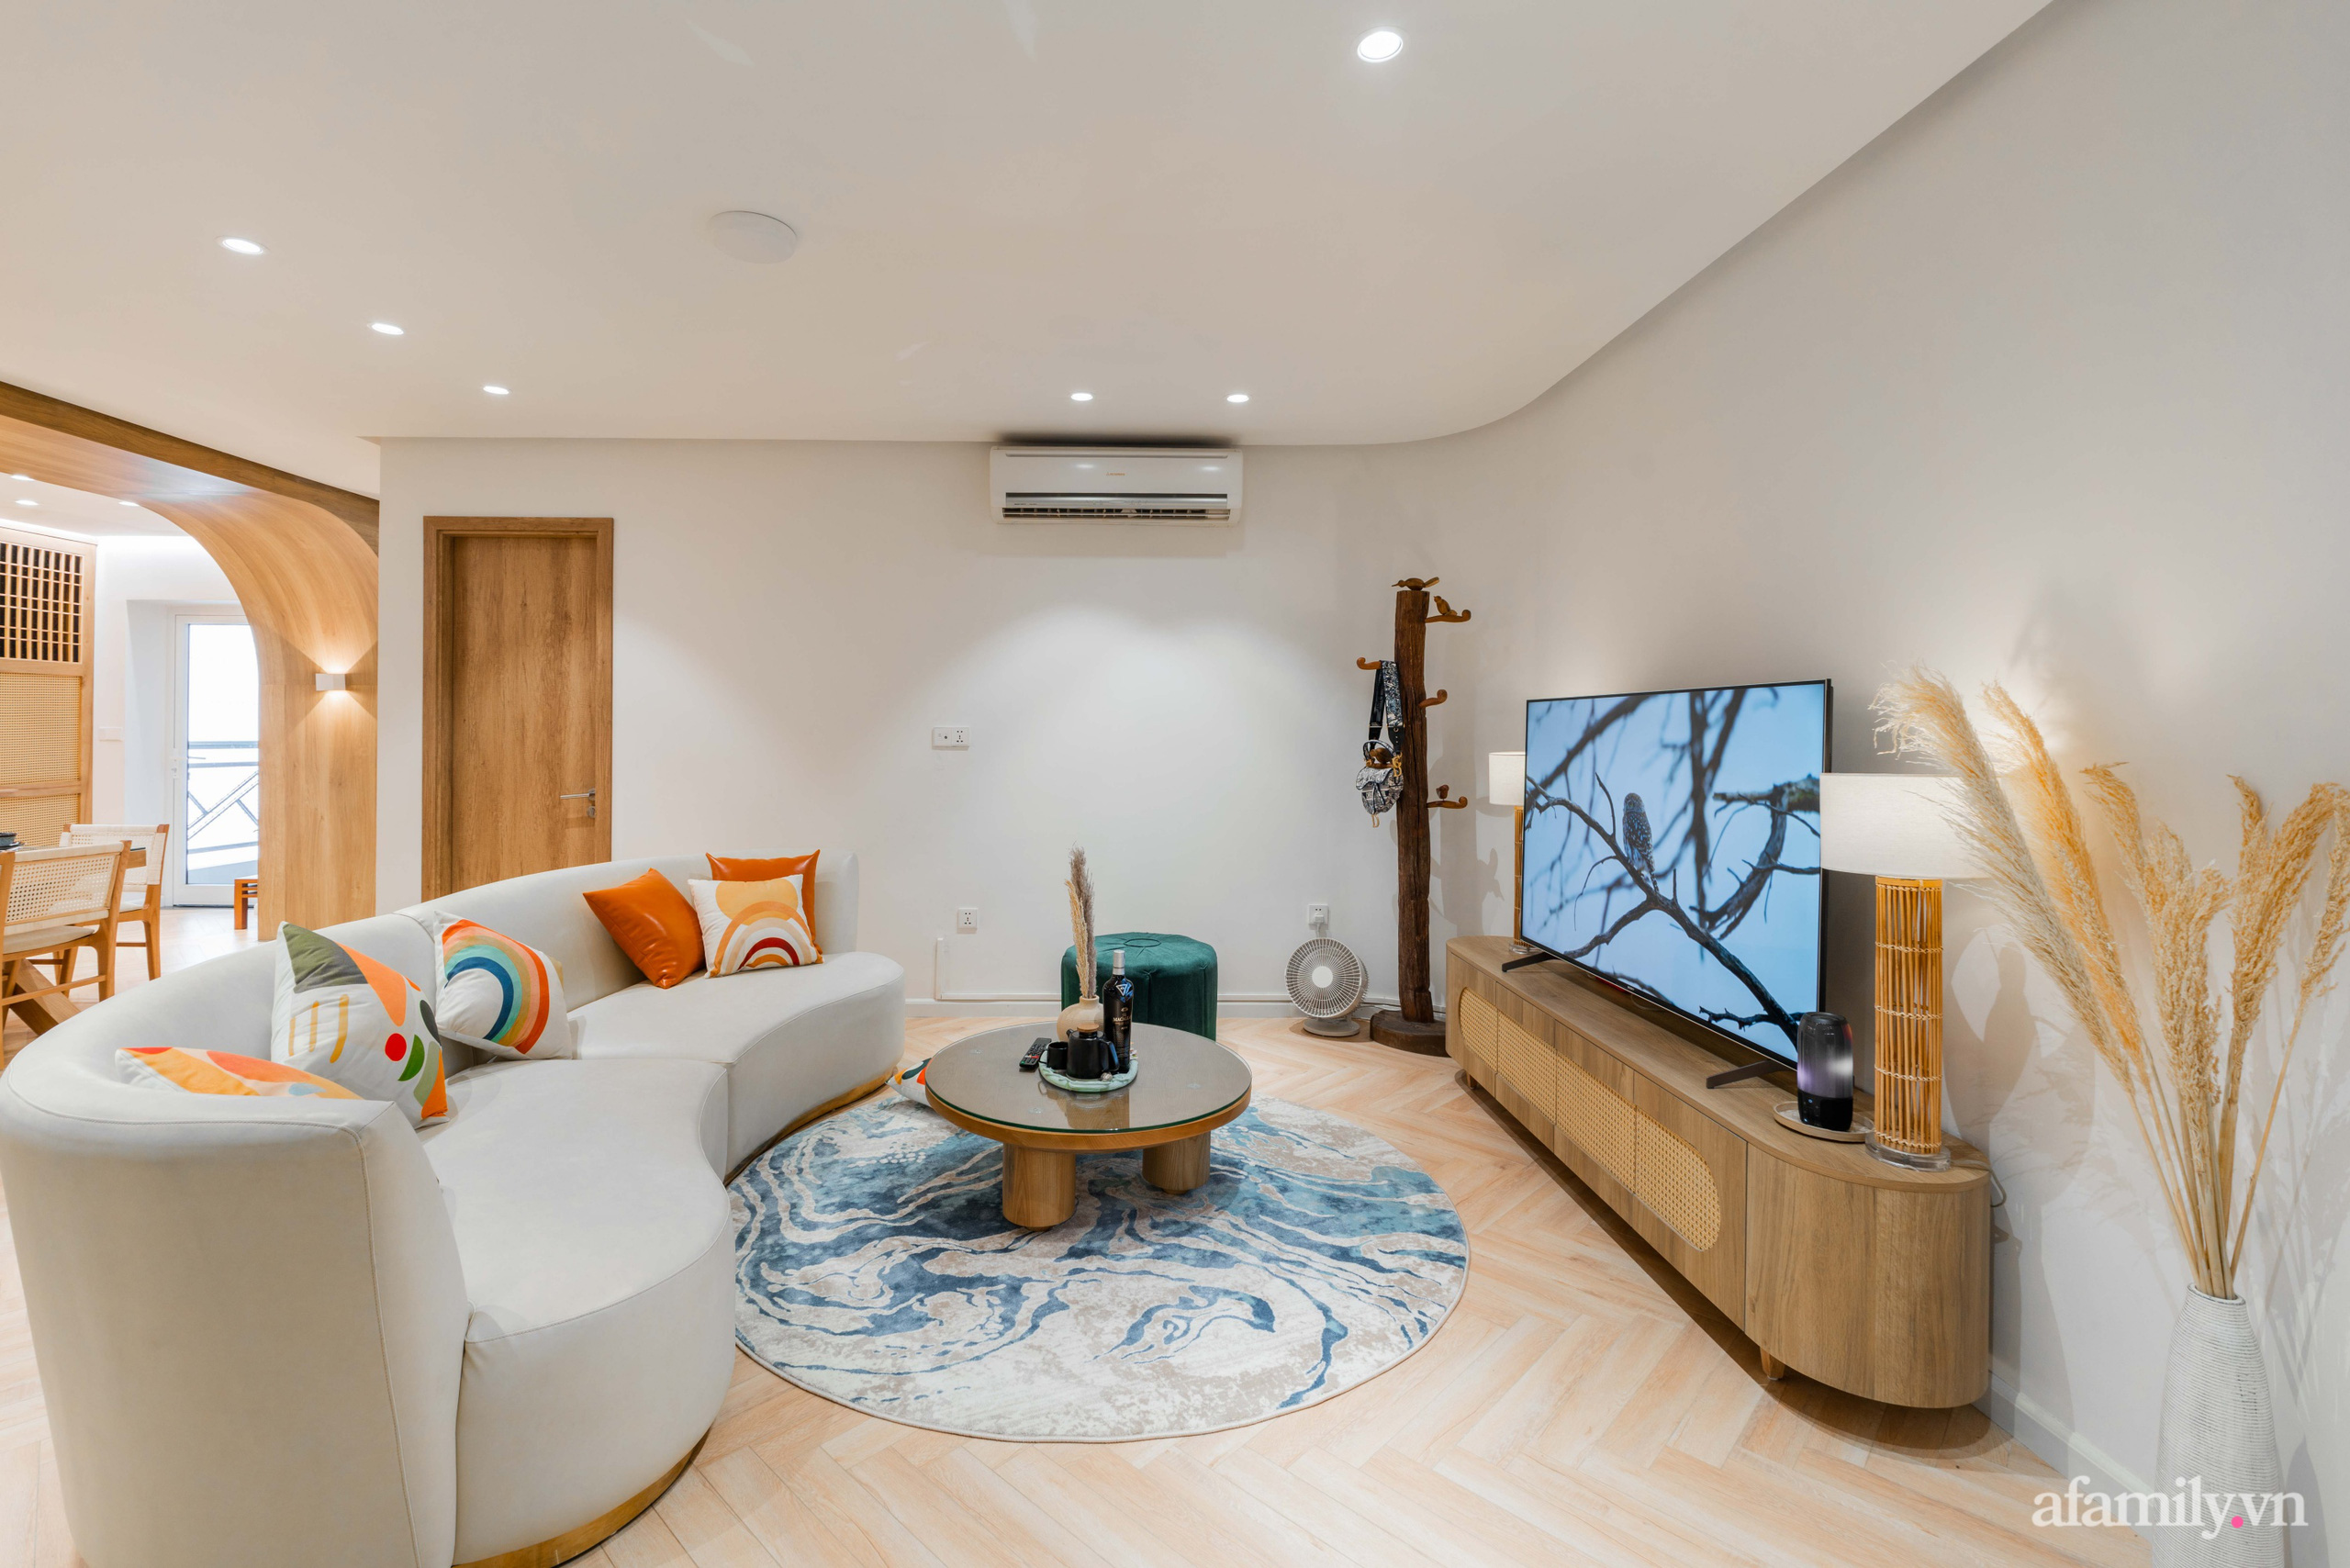 Căn hộ 180m² đẹp tinh tế và sang trọng với tông màu gỗ kết hợp sắc trắng hiện đại ở Hoàng Đạo Thúy, Hà Nội - Ảnh 1.